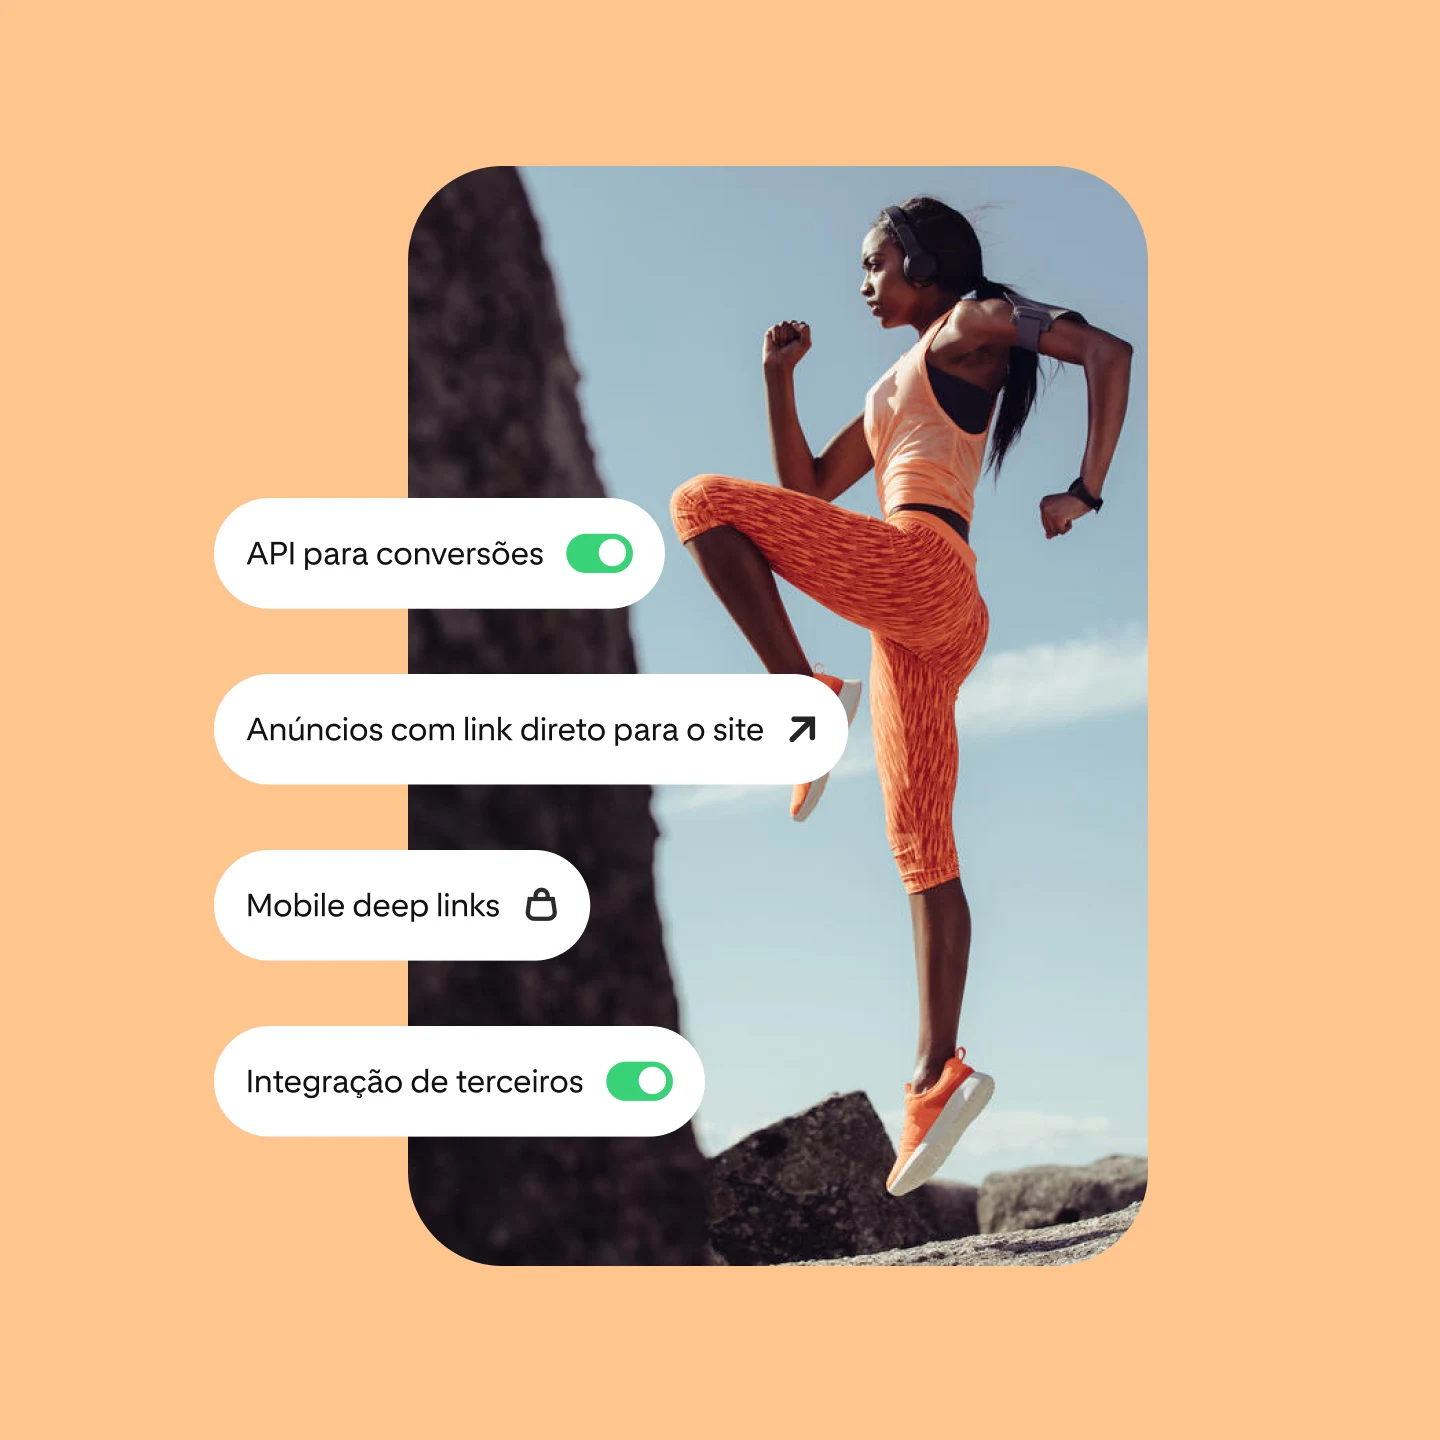 A imagem mostra soluções de desempenho do Pinterest, ao lado de uma mulher fazendo exercício vestindo roupa de treino laranja em ambiente externo.